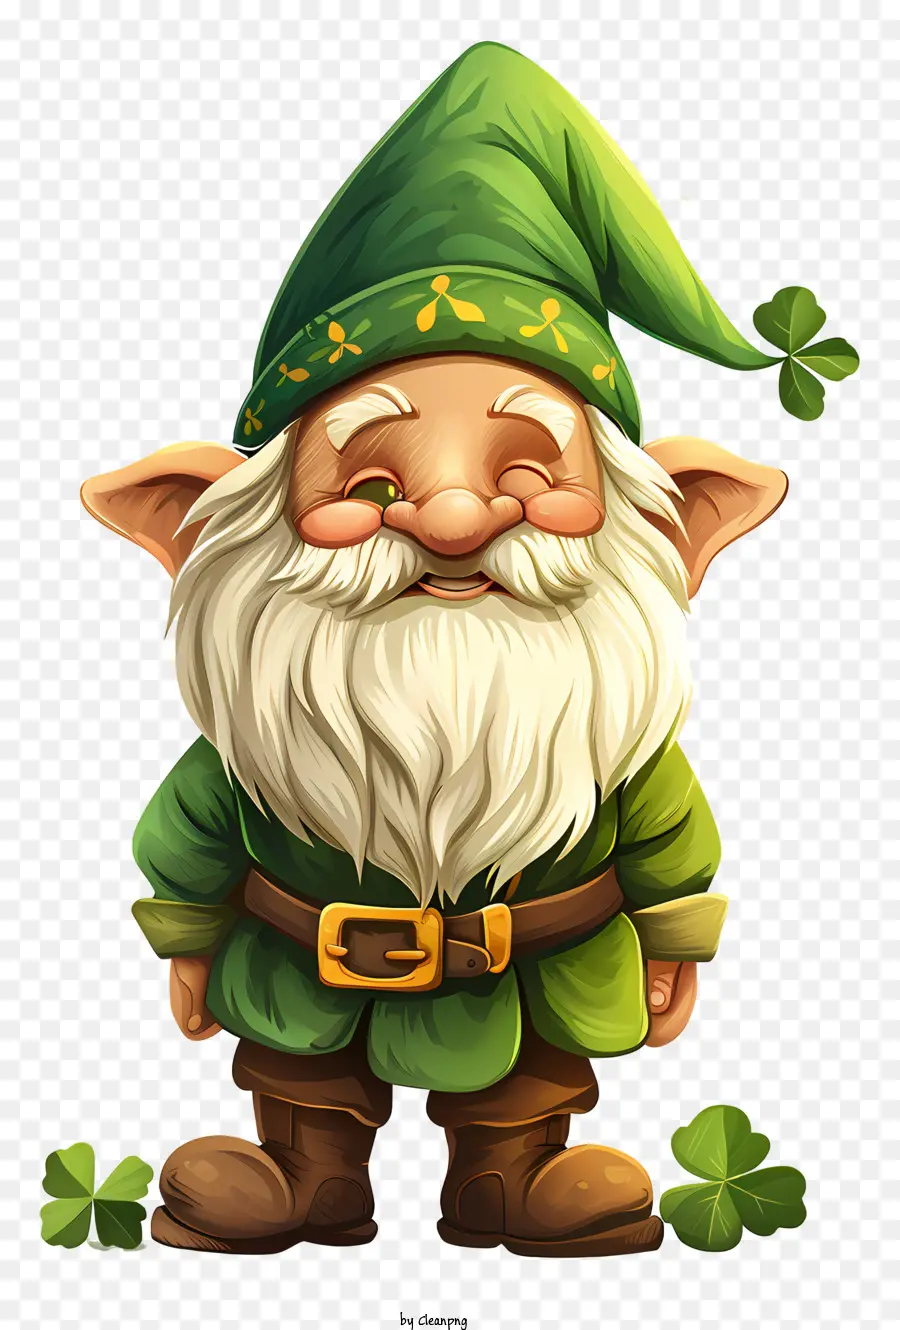 St. Patrick's Day Gnome Cartoon Charakter Green Outfit Bart Hut - Cartoon -Charakter mit grünem Outfit und Lächeln